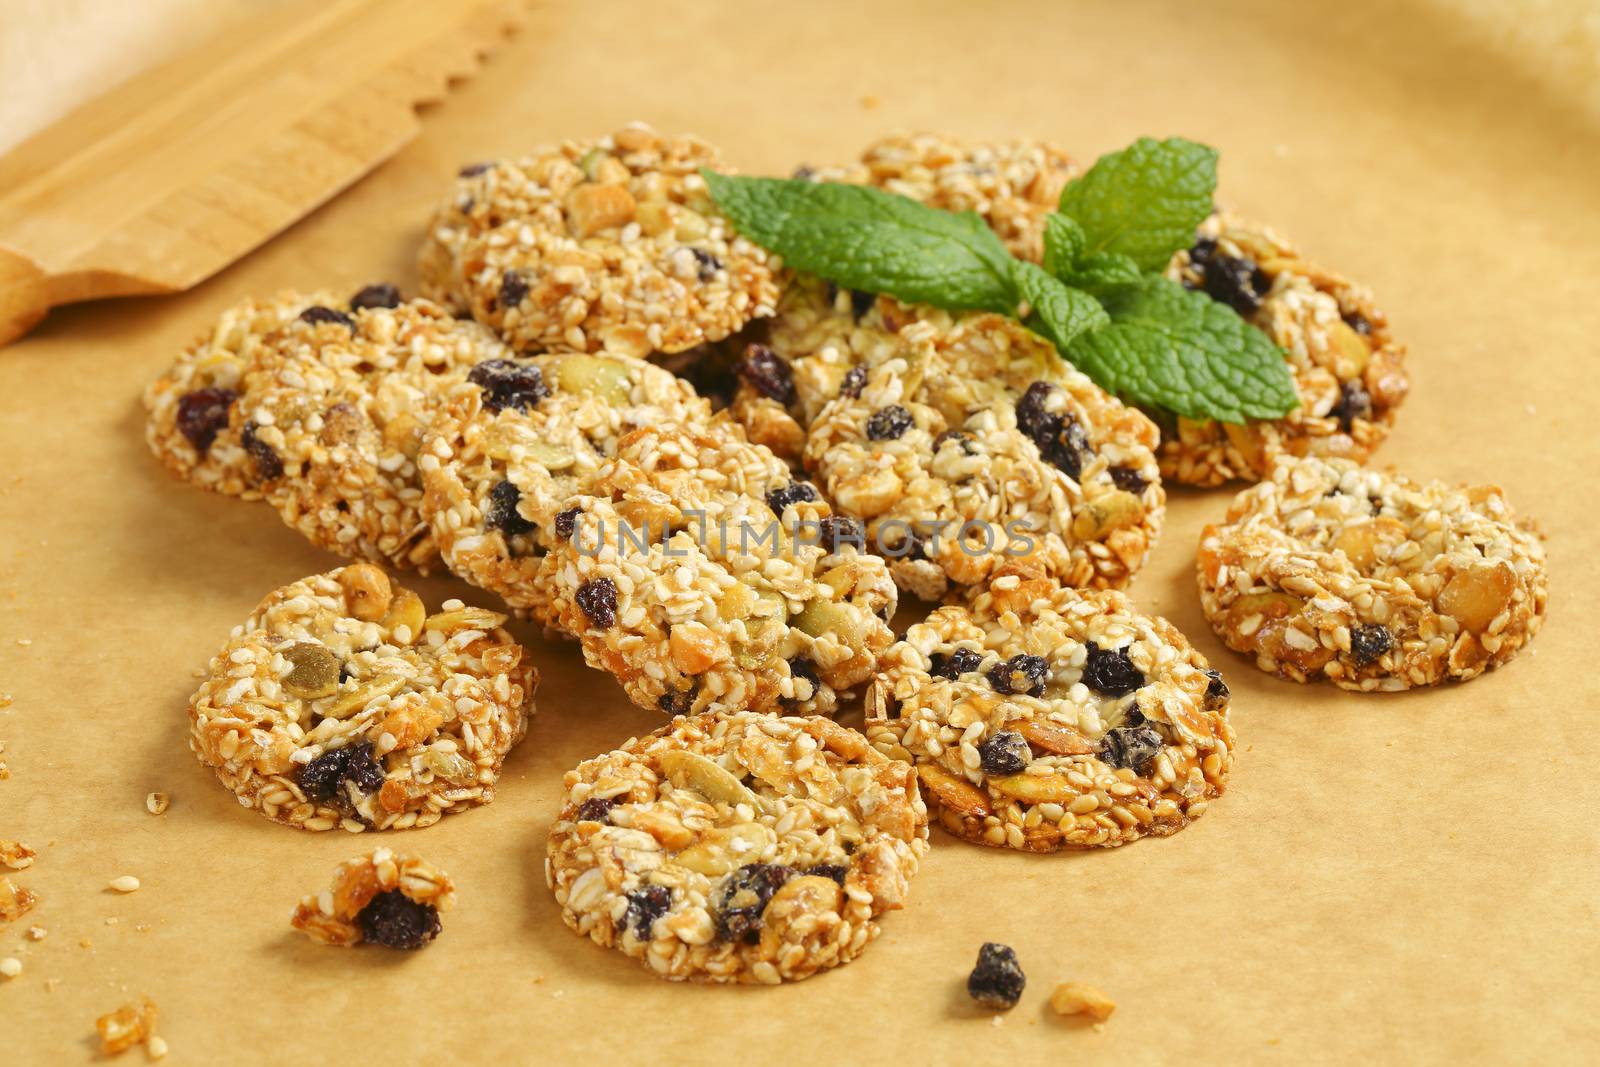 Sesame raisin cookies by Digifoodstock